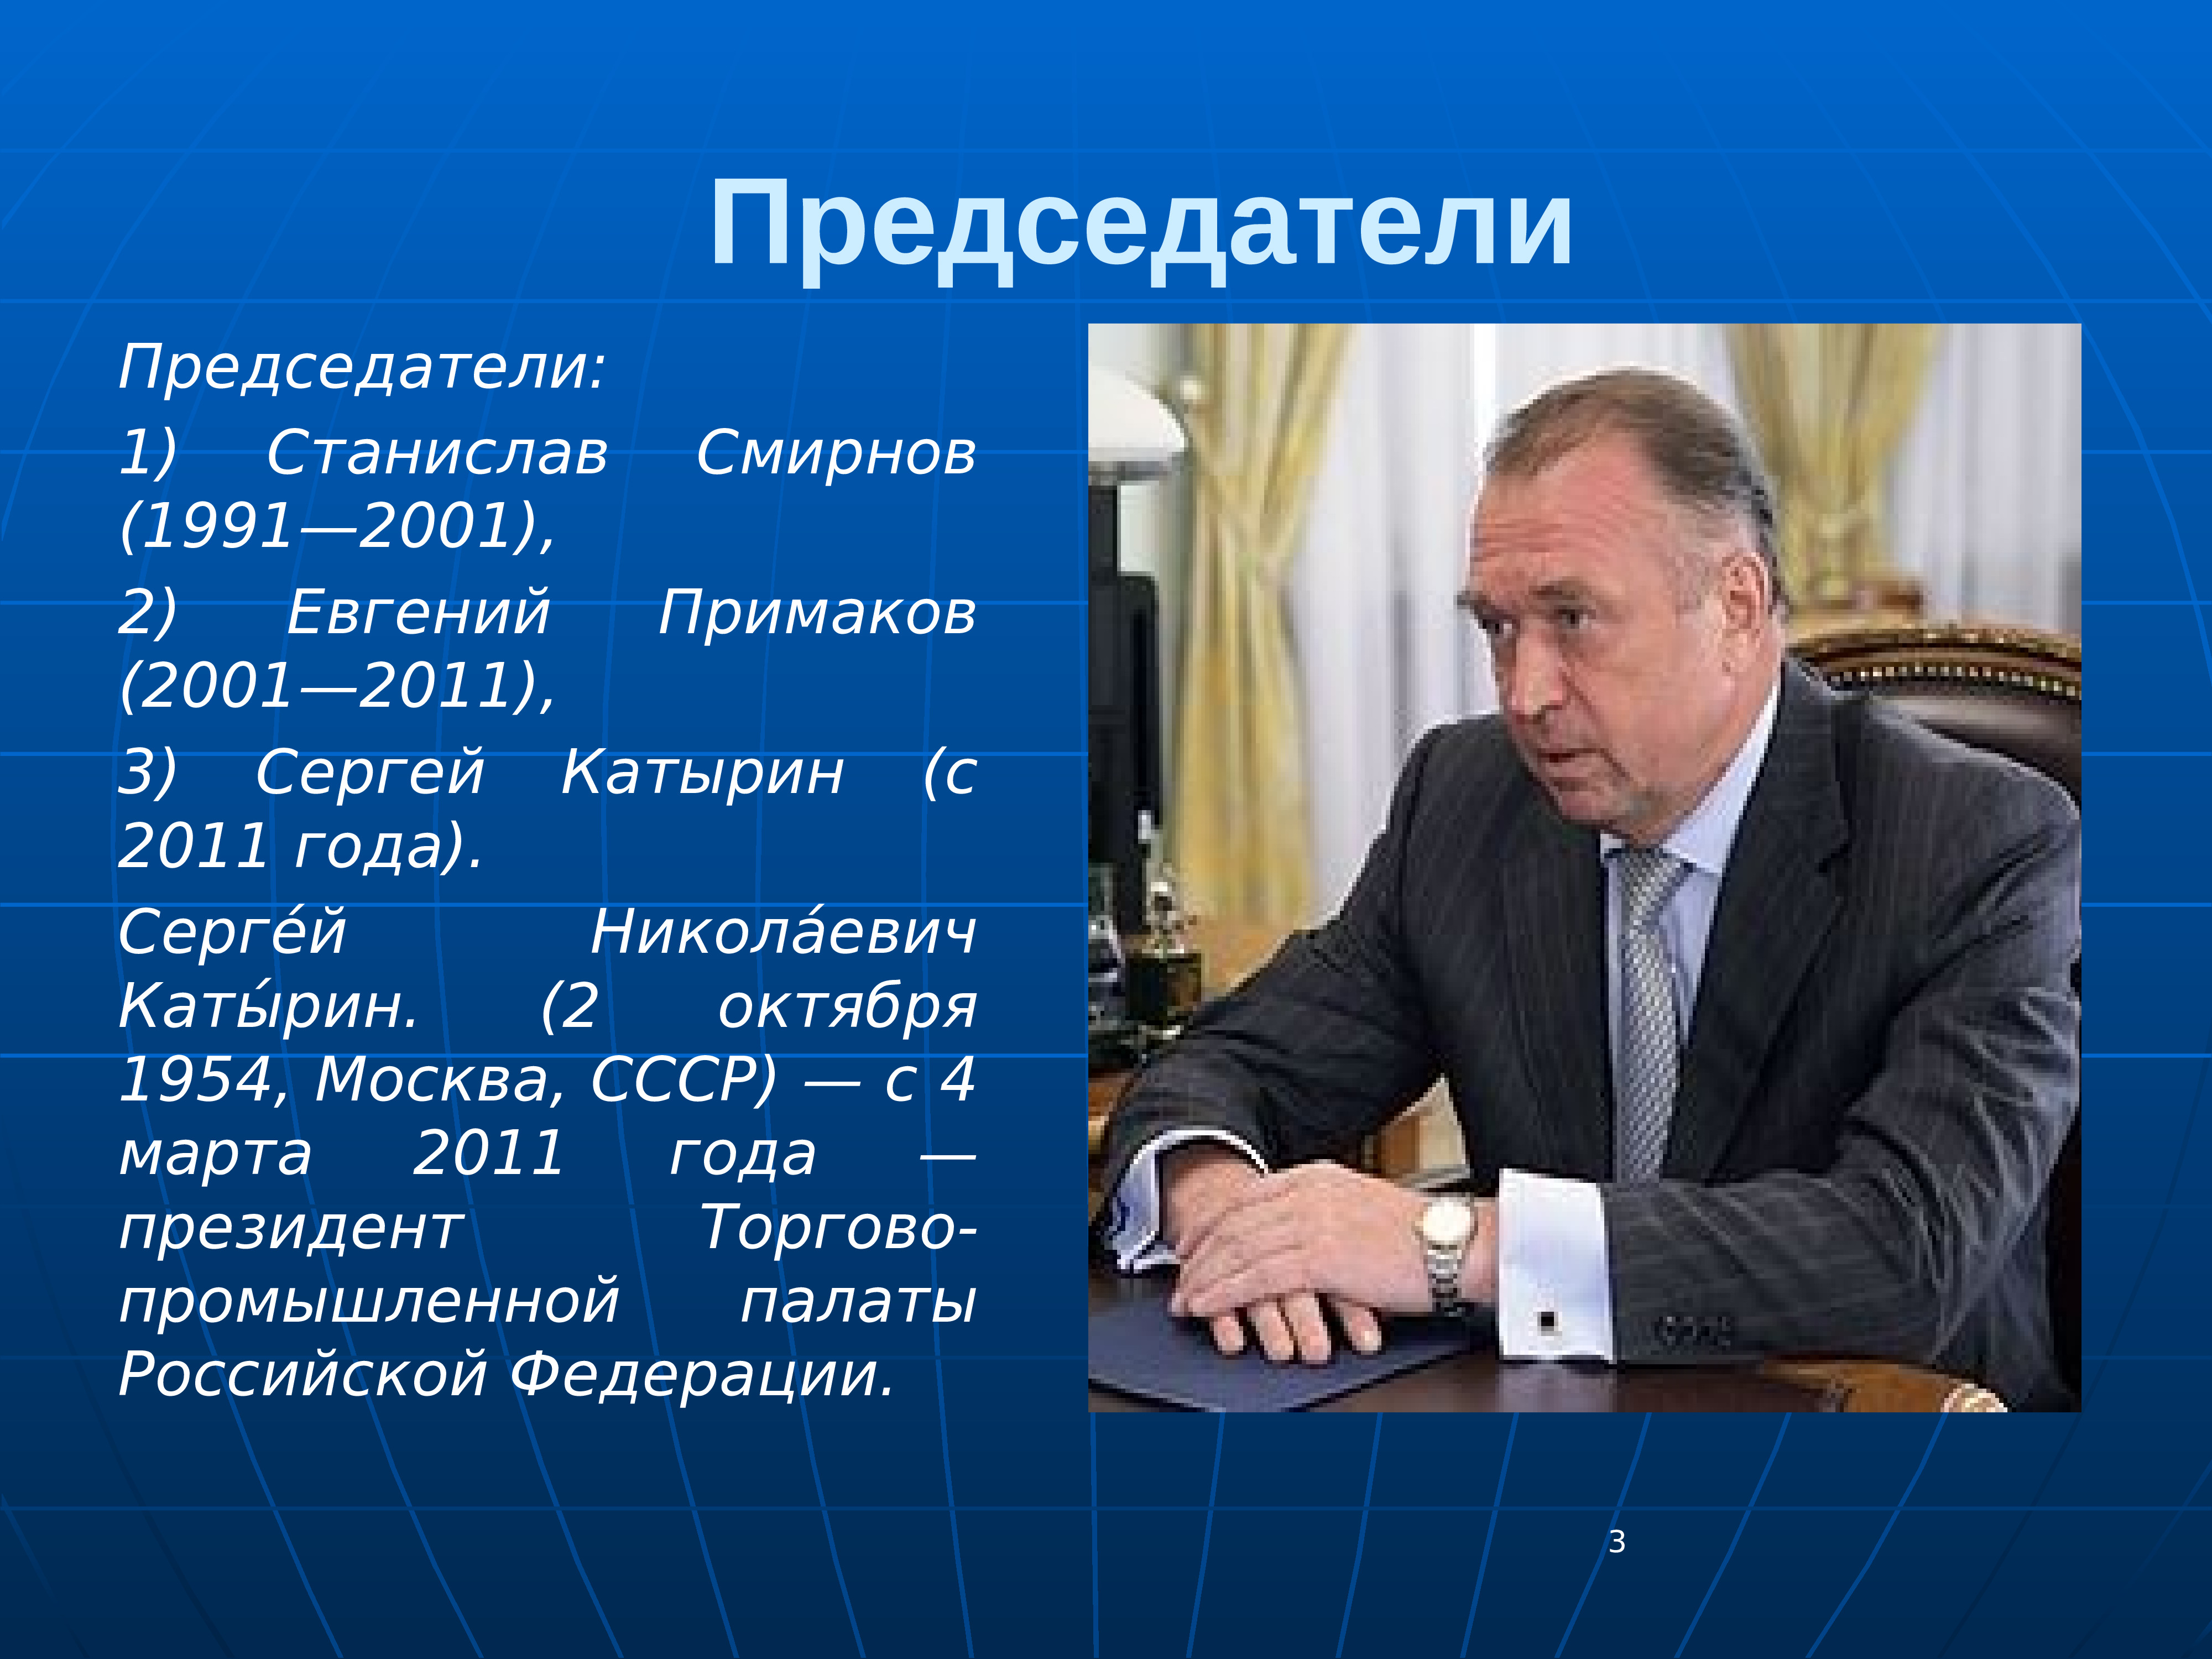 Председатель том 1. ТПП РФ презентация. Торгово Промышленная палата 2001 2011. Примаков презентация.